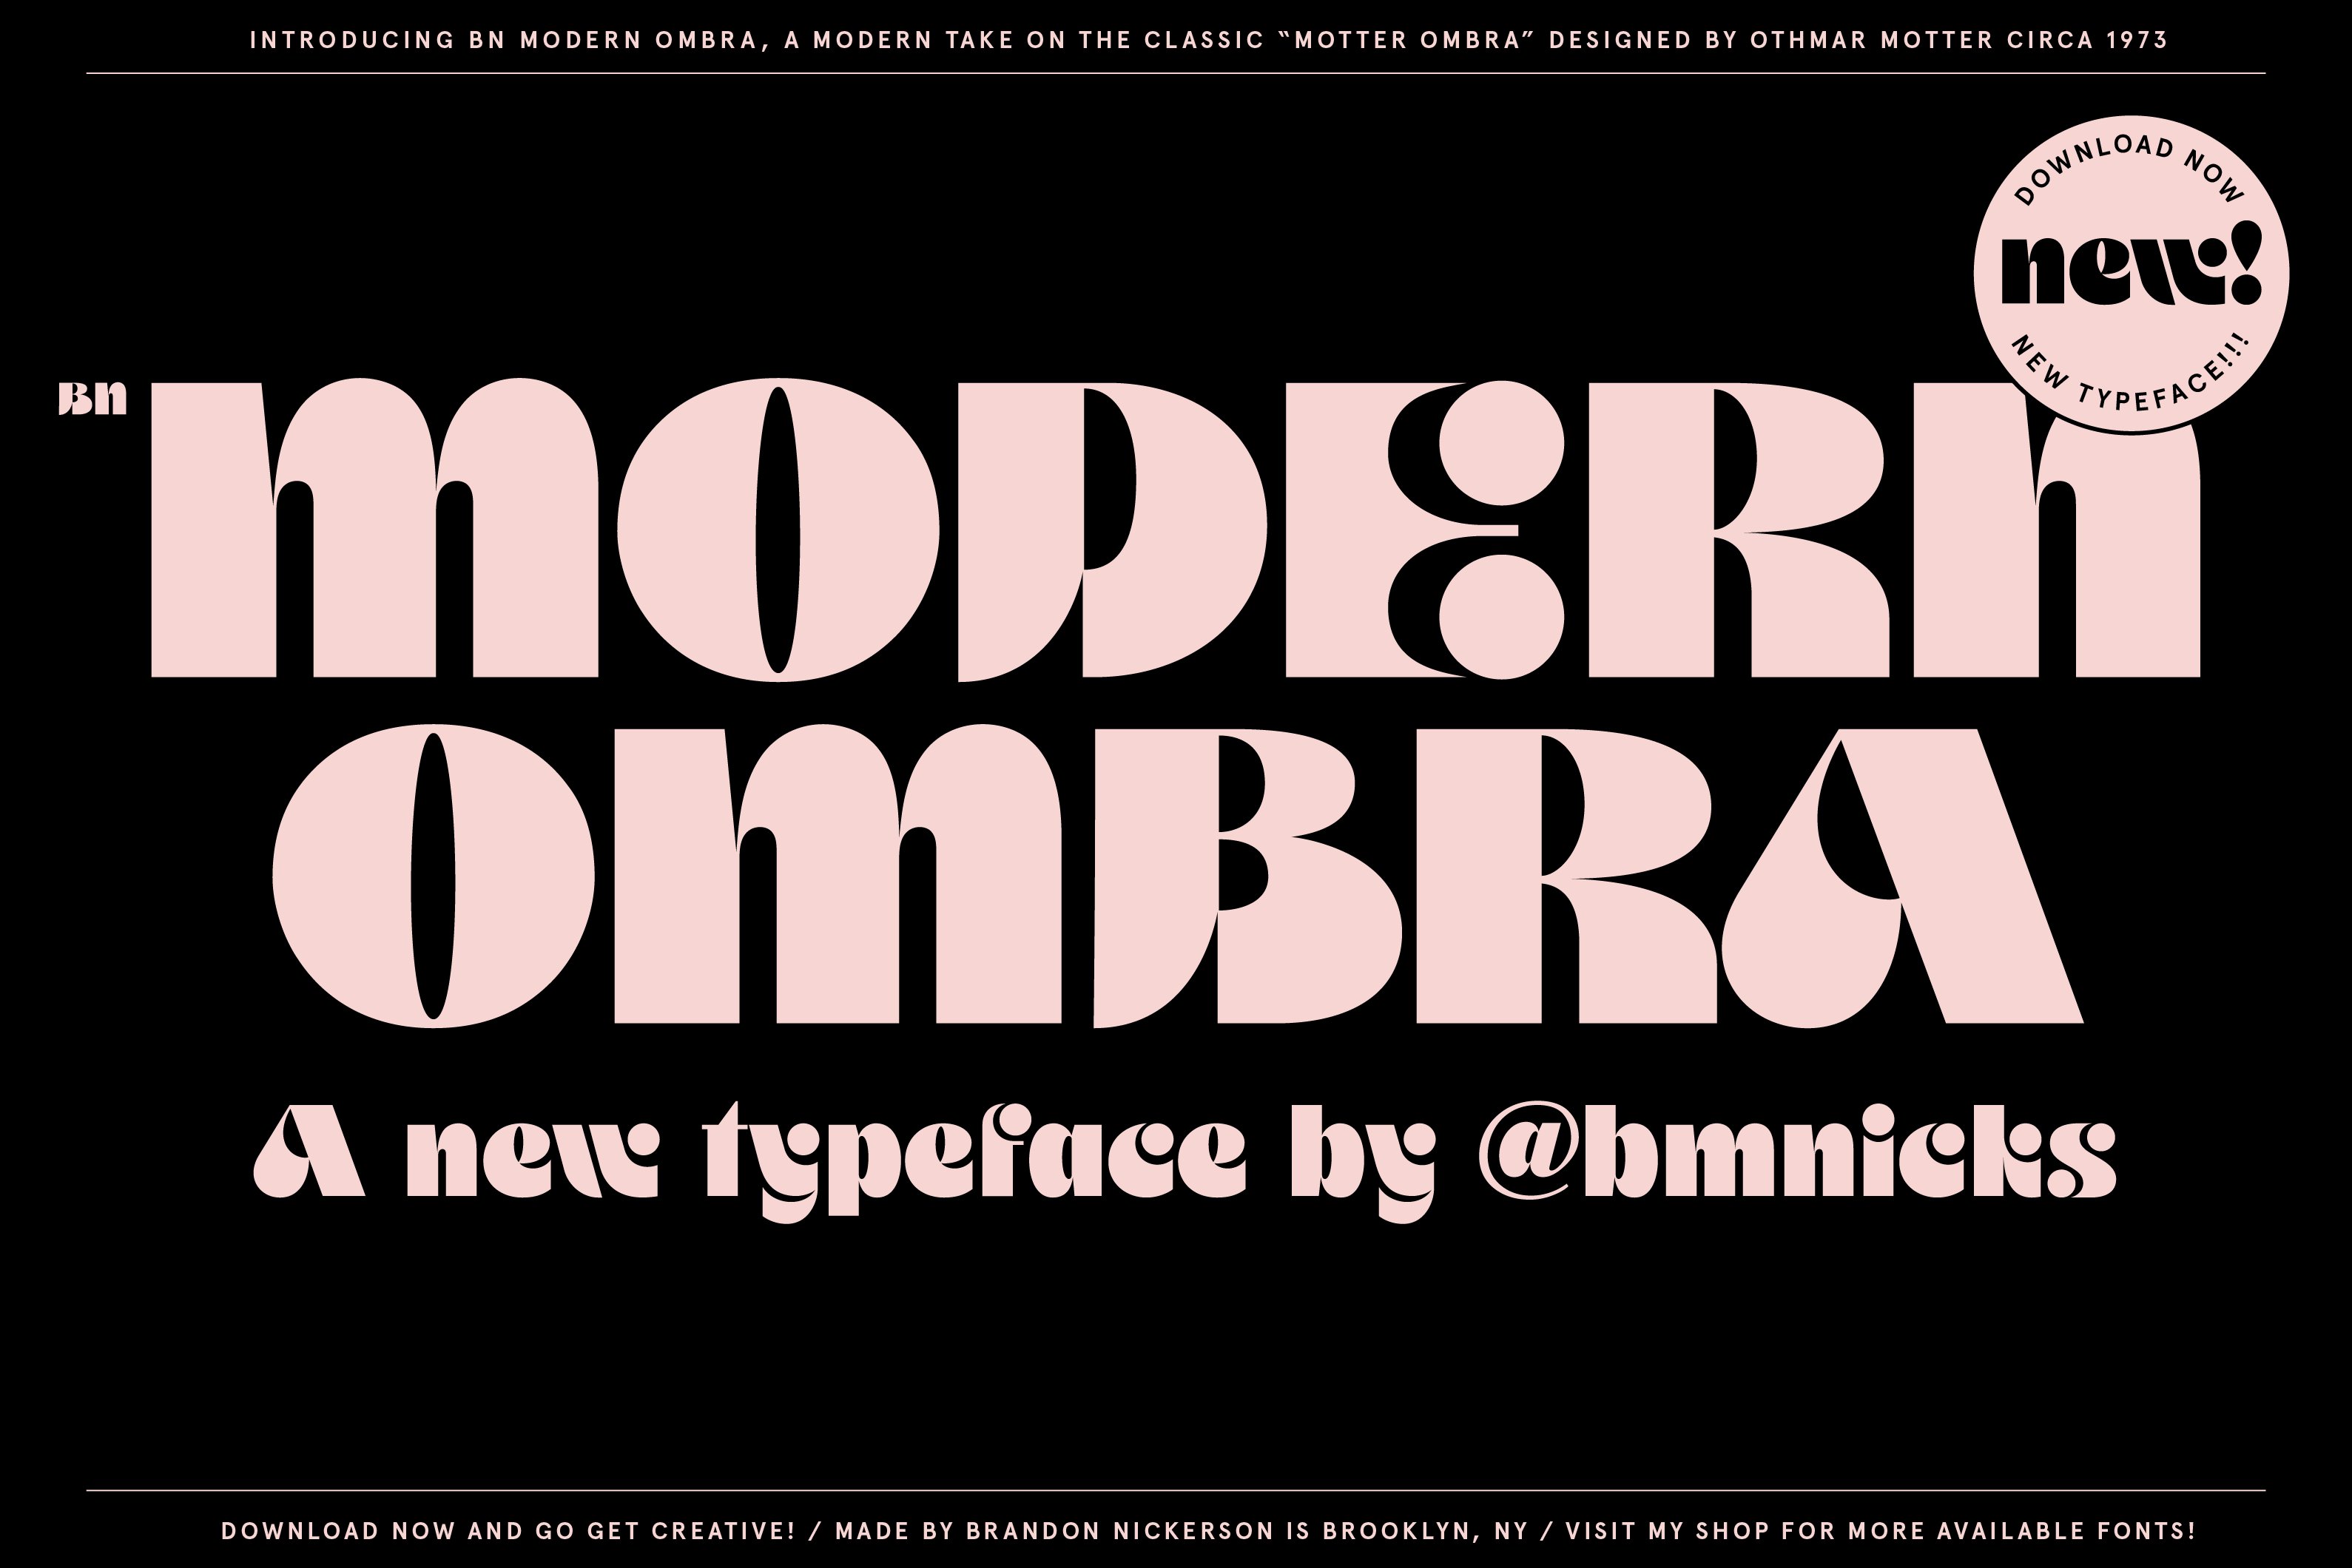 Beispiel einer BN Modern Ombra-Schriftart